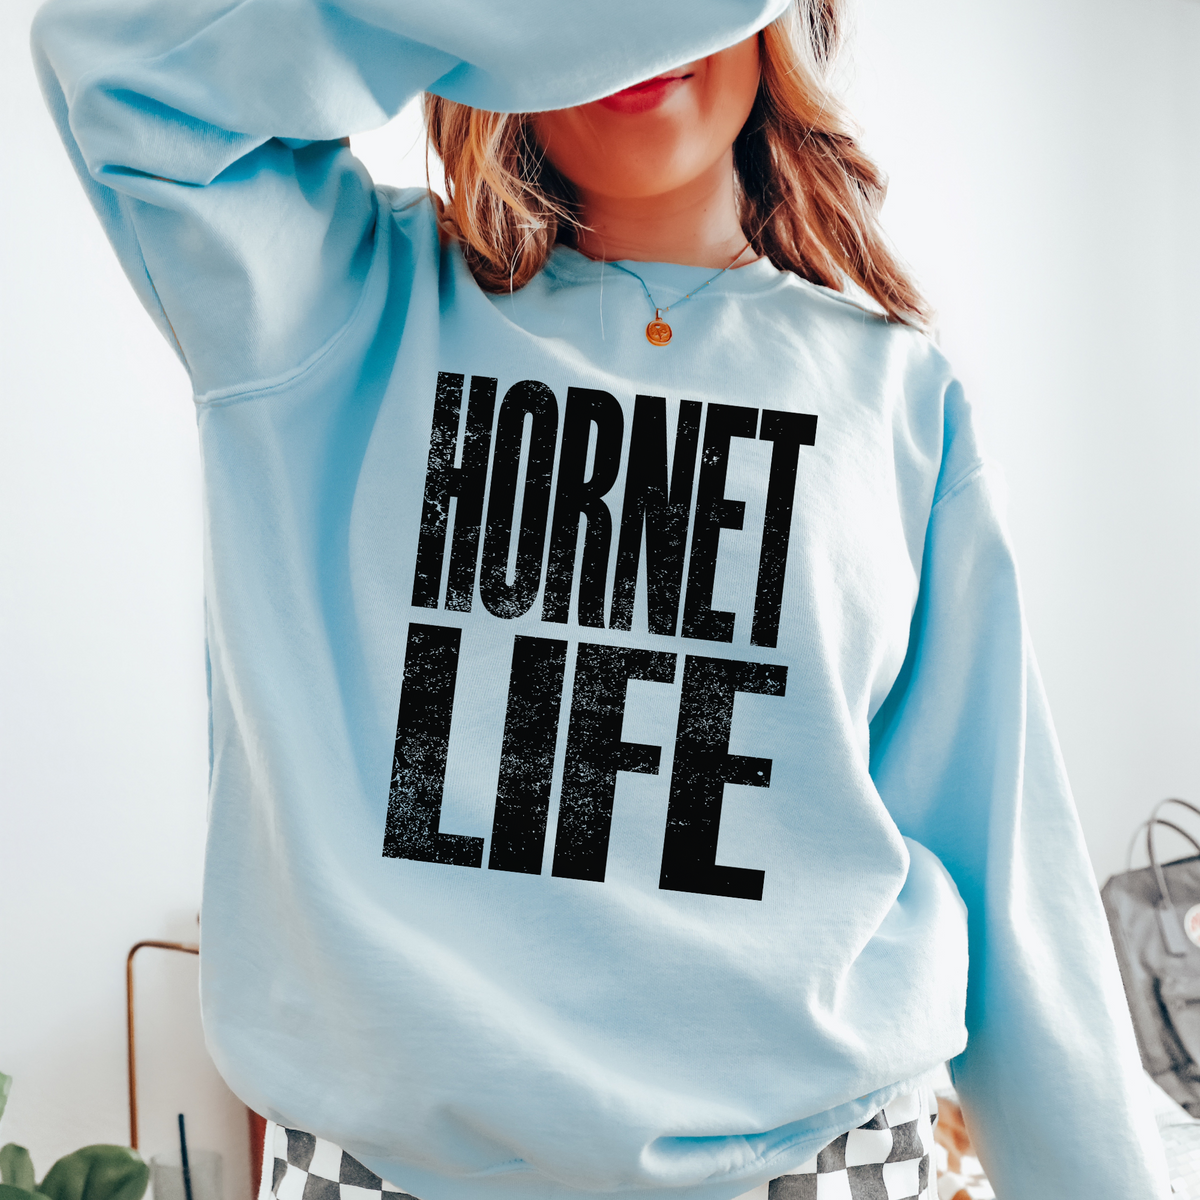 Hornet Life Faded Distressed Black Digital Design, PNG